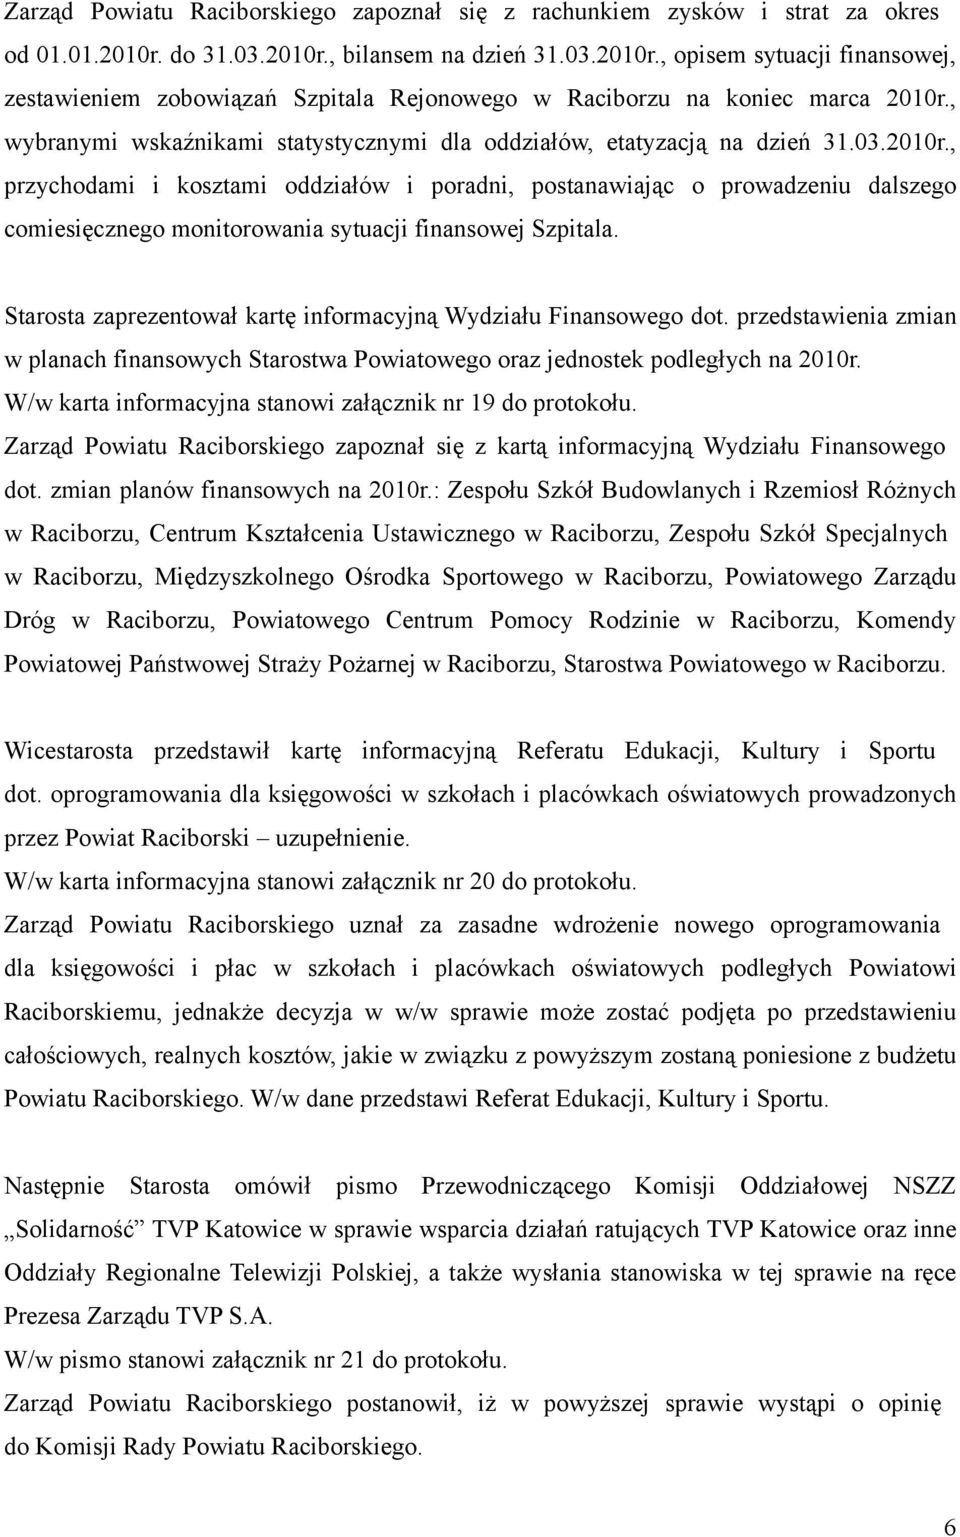 , wybranymi wskaźnikami statystycznymi dla oddziałów, etatyzacją na dzień 31.03.2010r.